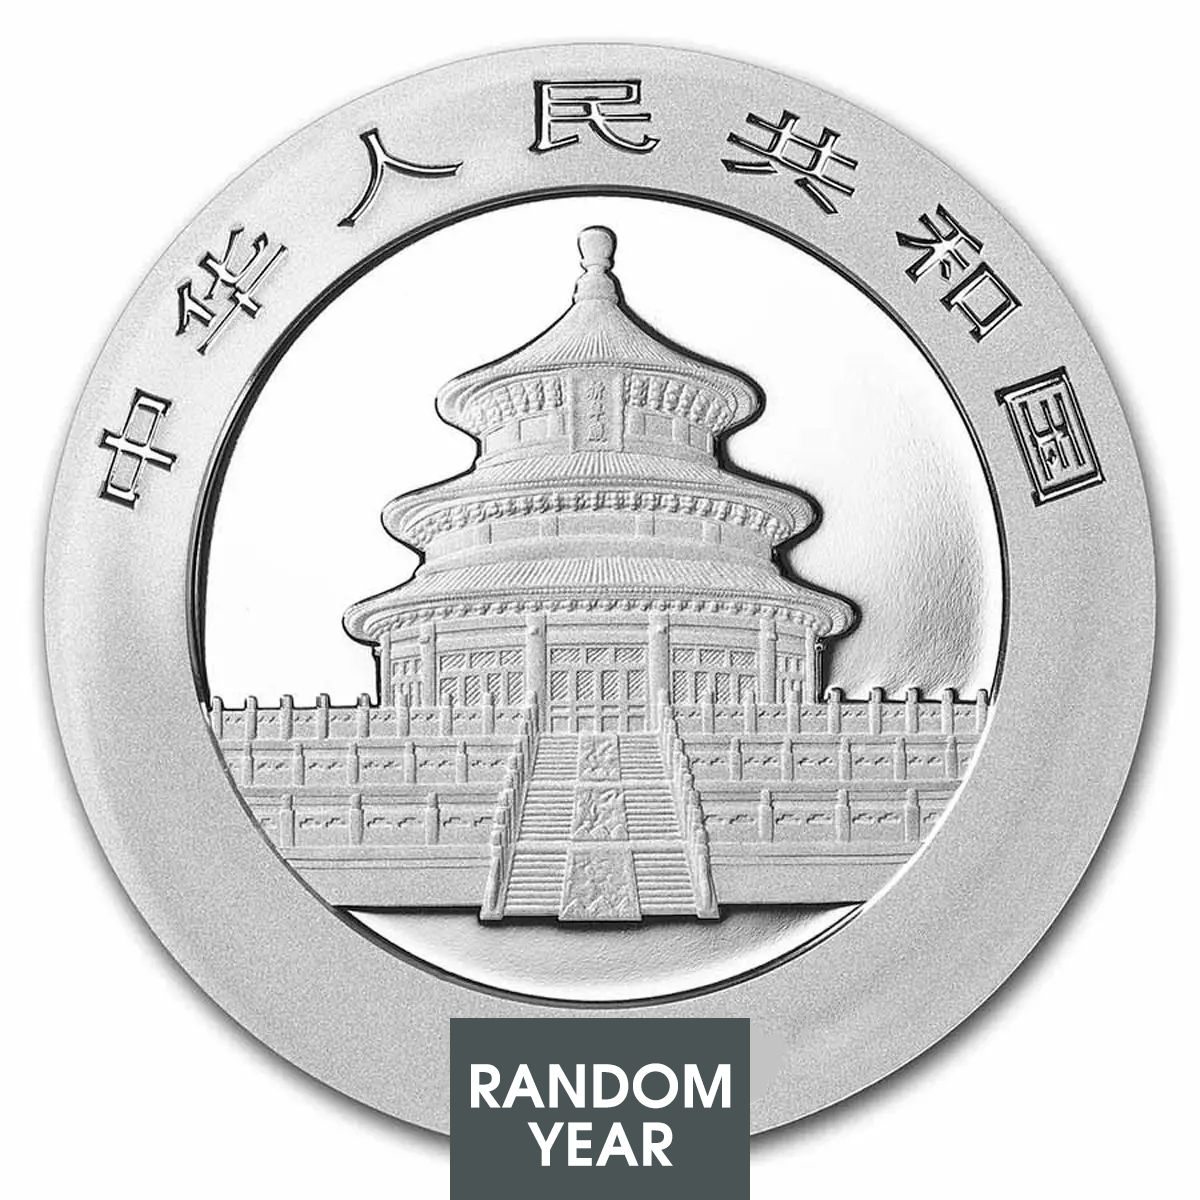 30 grams Silver Coin - Panda